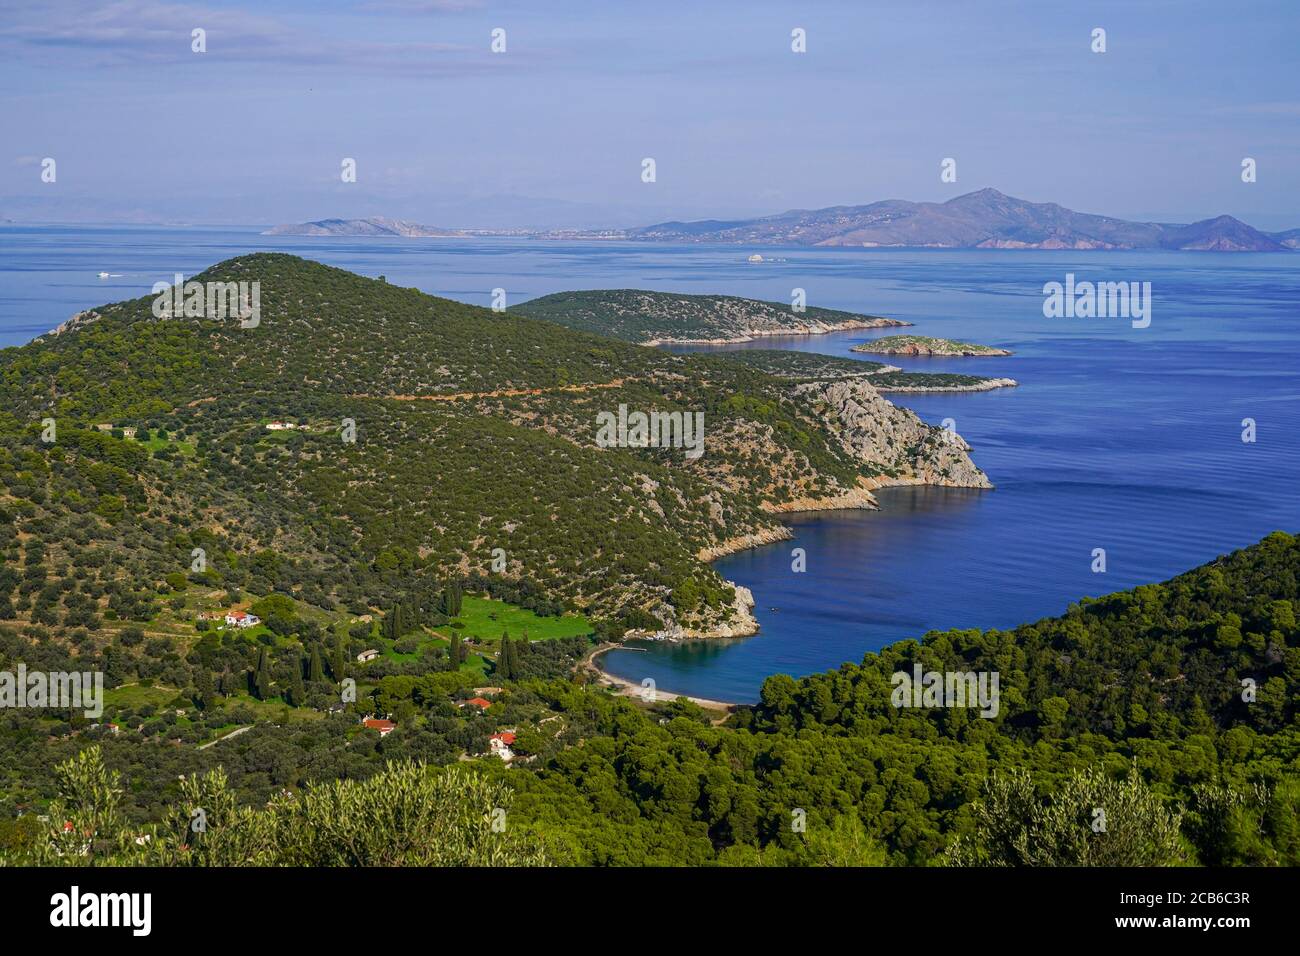 Ländliche griechische Insellandschaft fotografiert bei Poros ein kleines griechisches Inselpaar im südlichen Teil des Saronischen Golfs, Griechenland Stockfoto